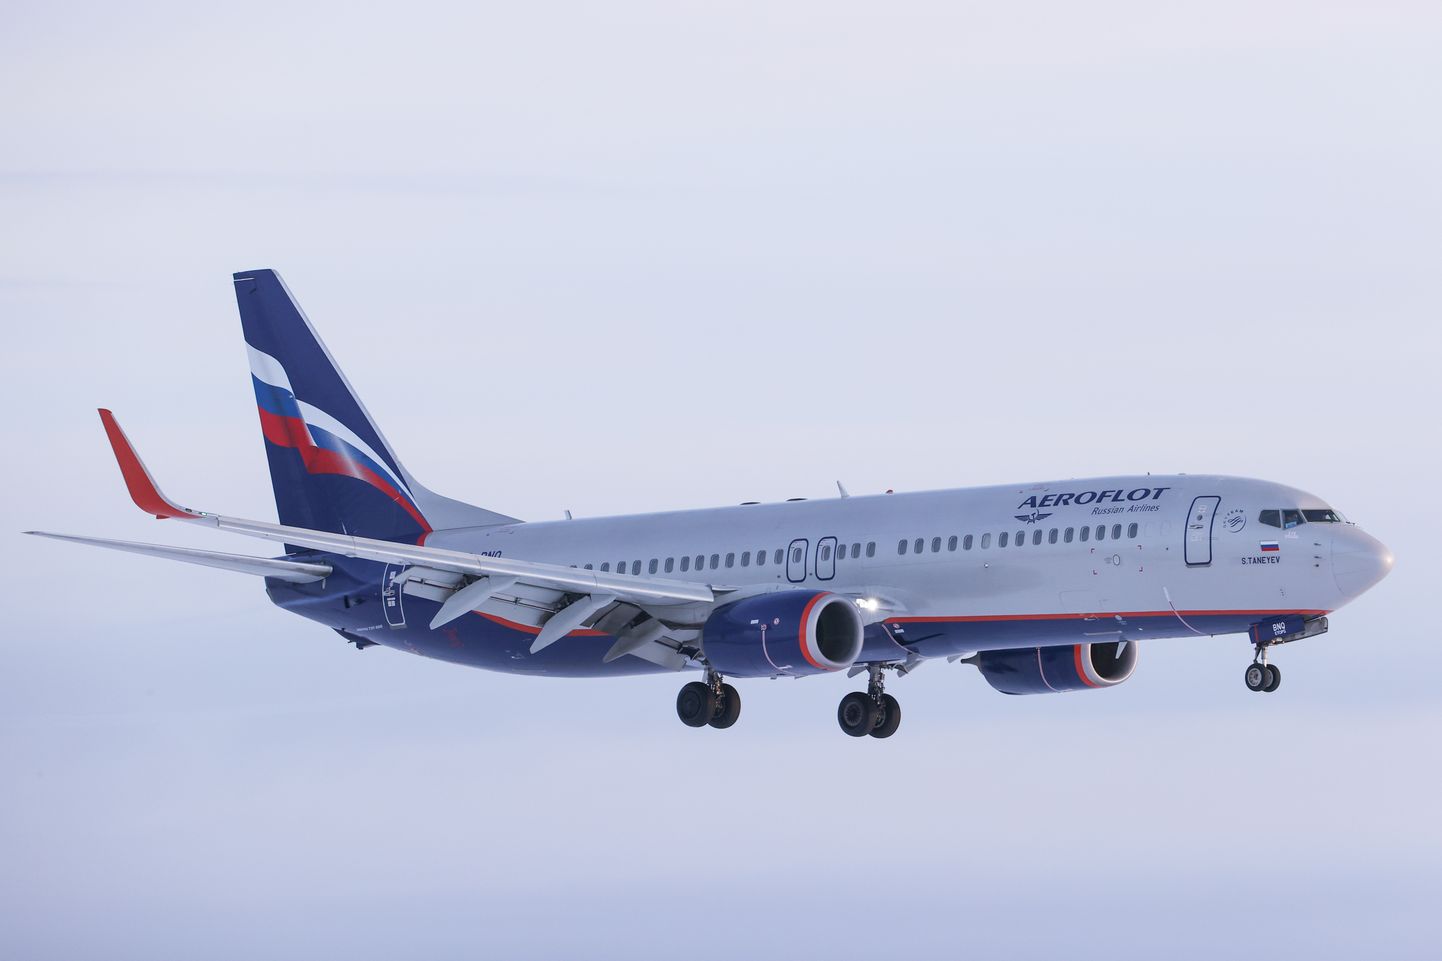 Vene lennufrima Aeroflot lennuk Venemaal 16. november 2021.